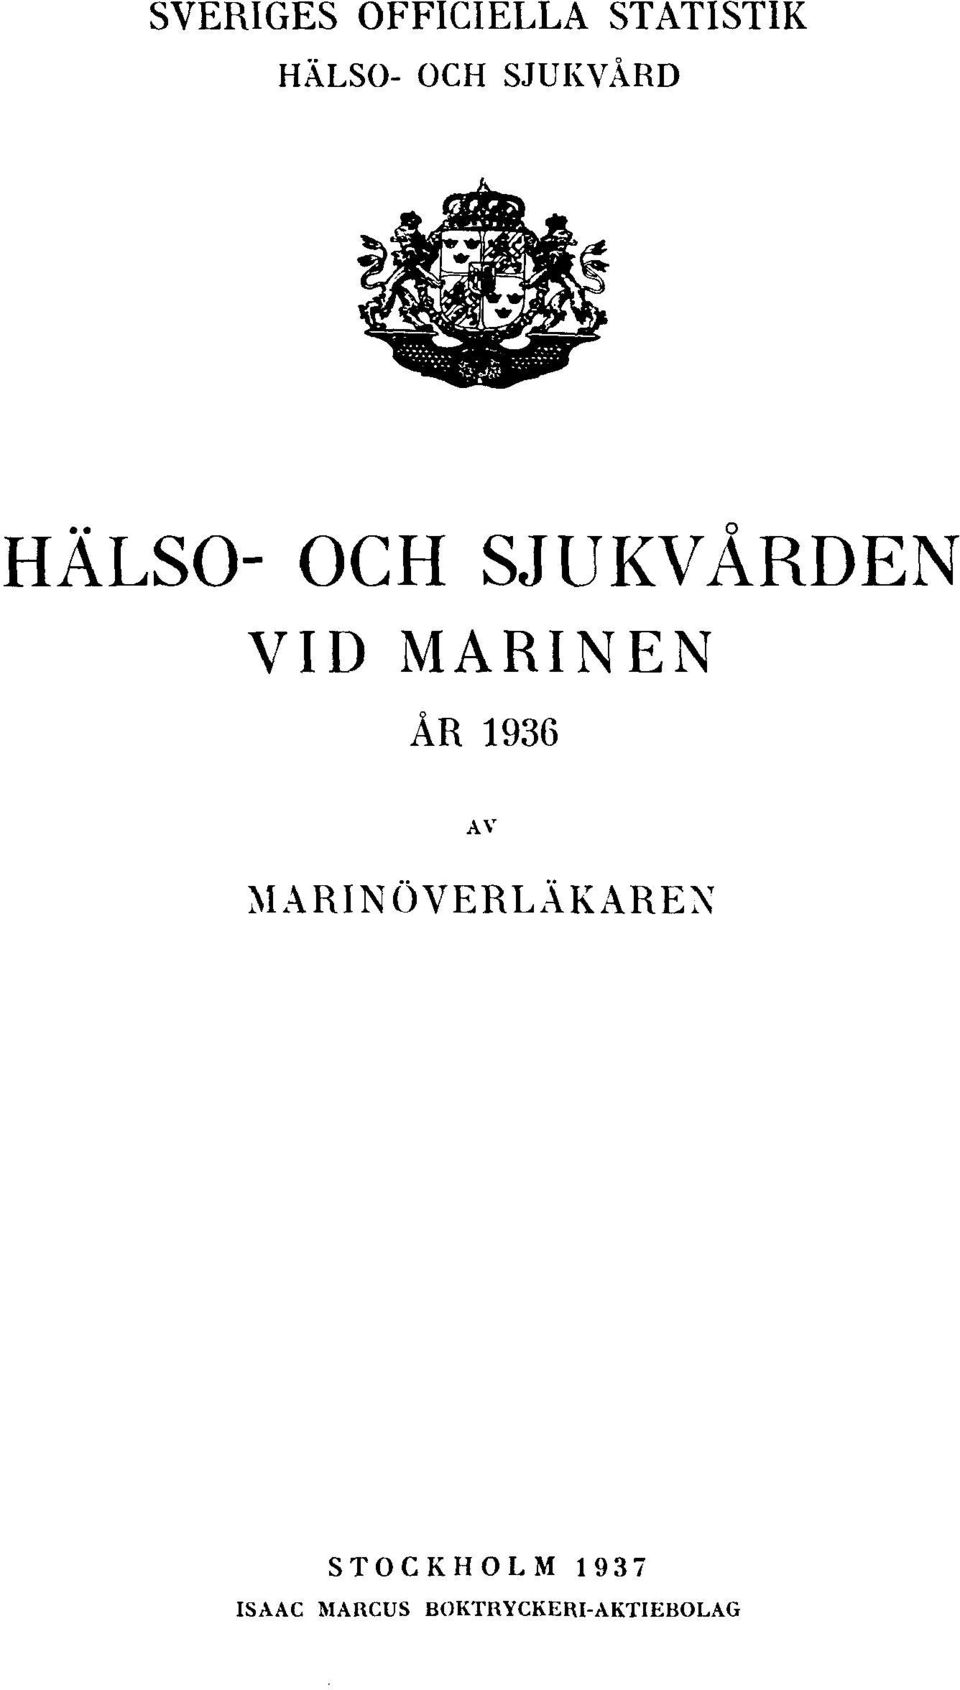 MARINEN ÅR 1936 AV MARINÖVERLÄKAREN